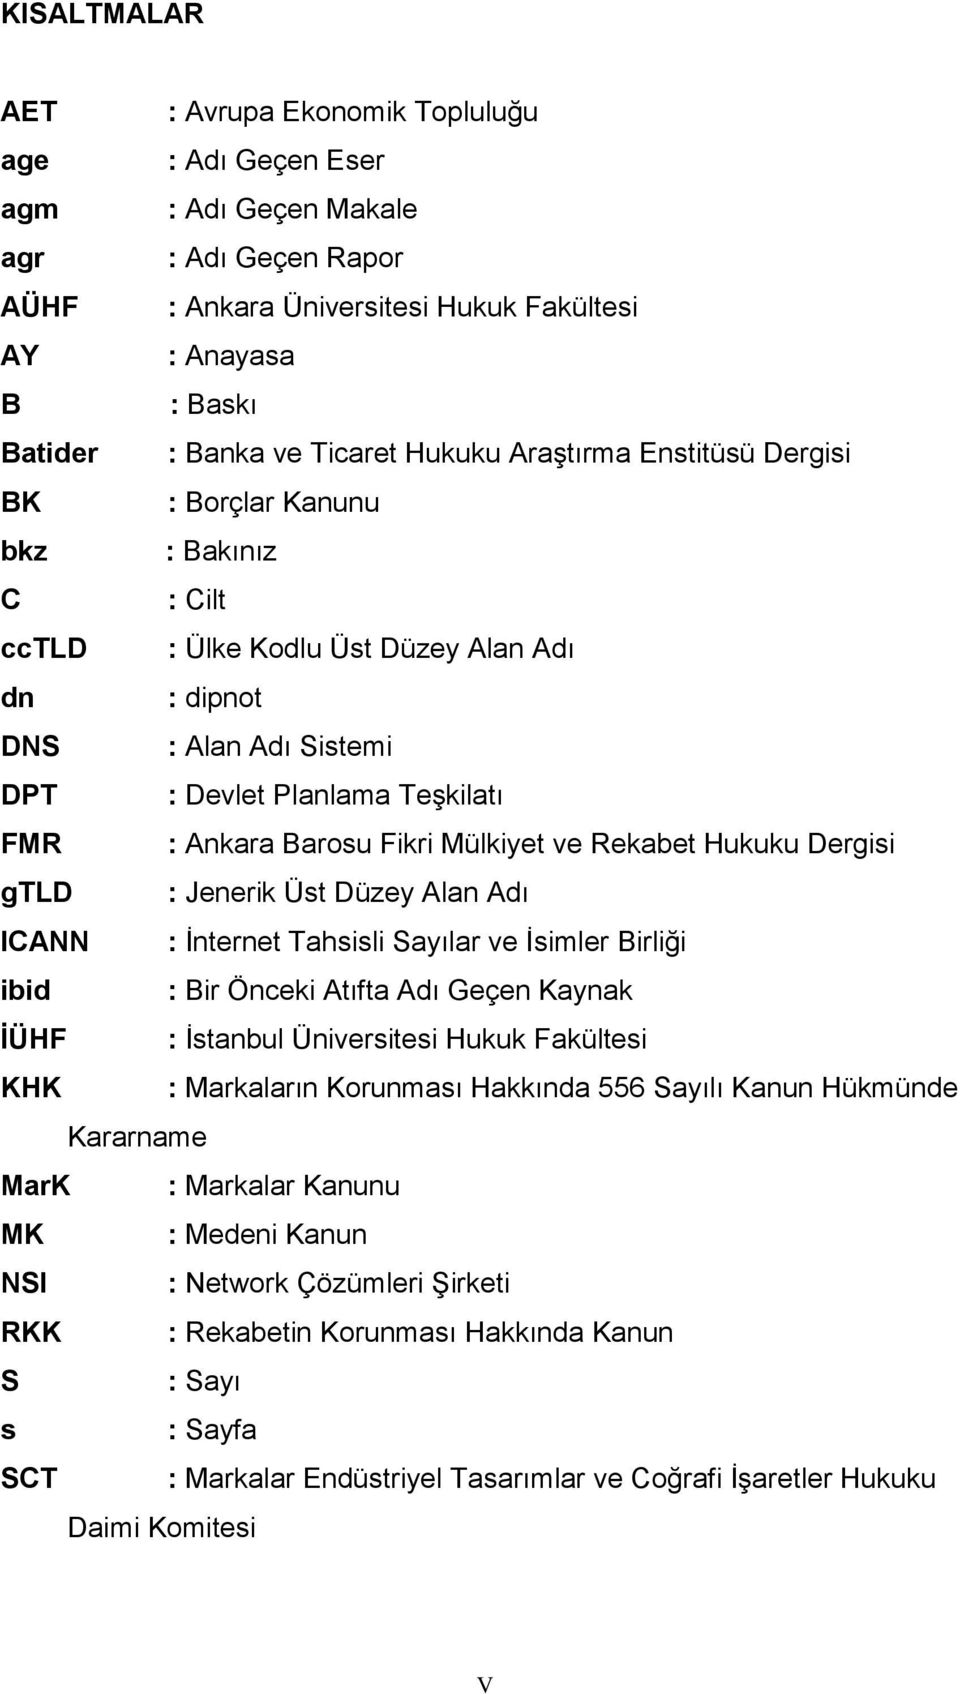 Ankara Barosu Fikri Mülkiyet ve Rekabet Hukuku Dergisi gtld : Jenerik Üst Düzey Alan Adı ICANN : İnternet Tahsisli Sayılar ve İsimler Birliği ibid : Bir Önceki Atıfta Adı Geçen Kaynak İÜHF : İstanbul